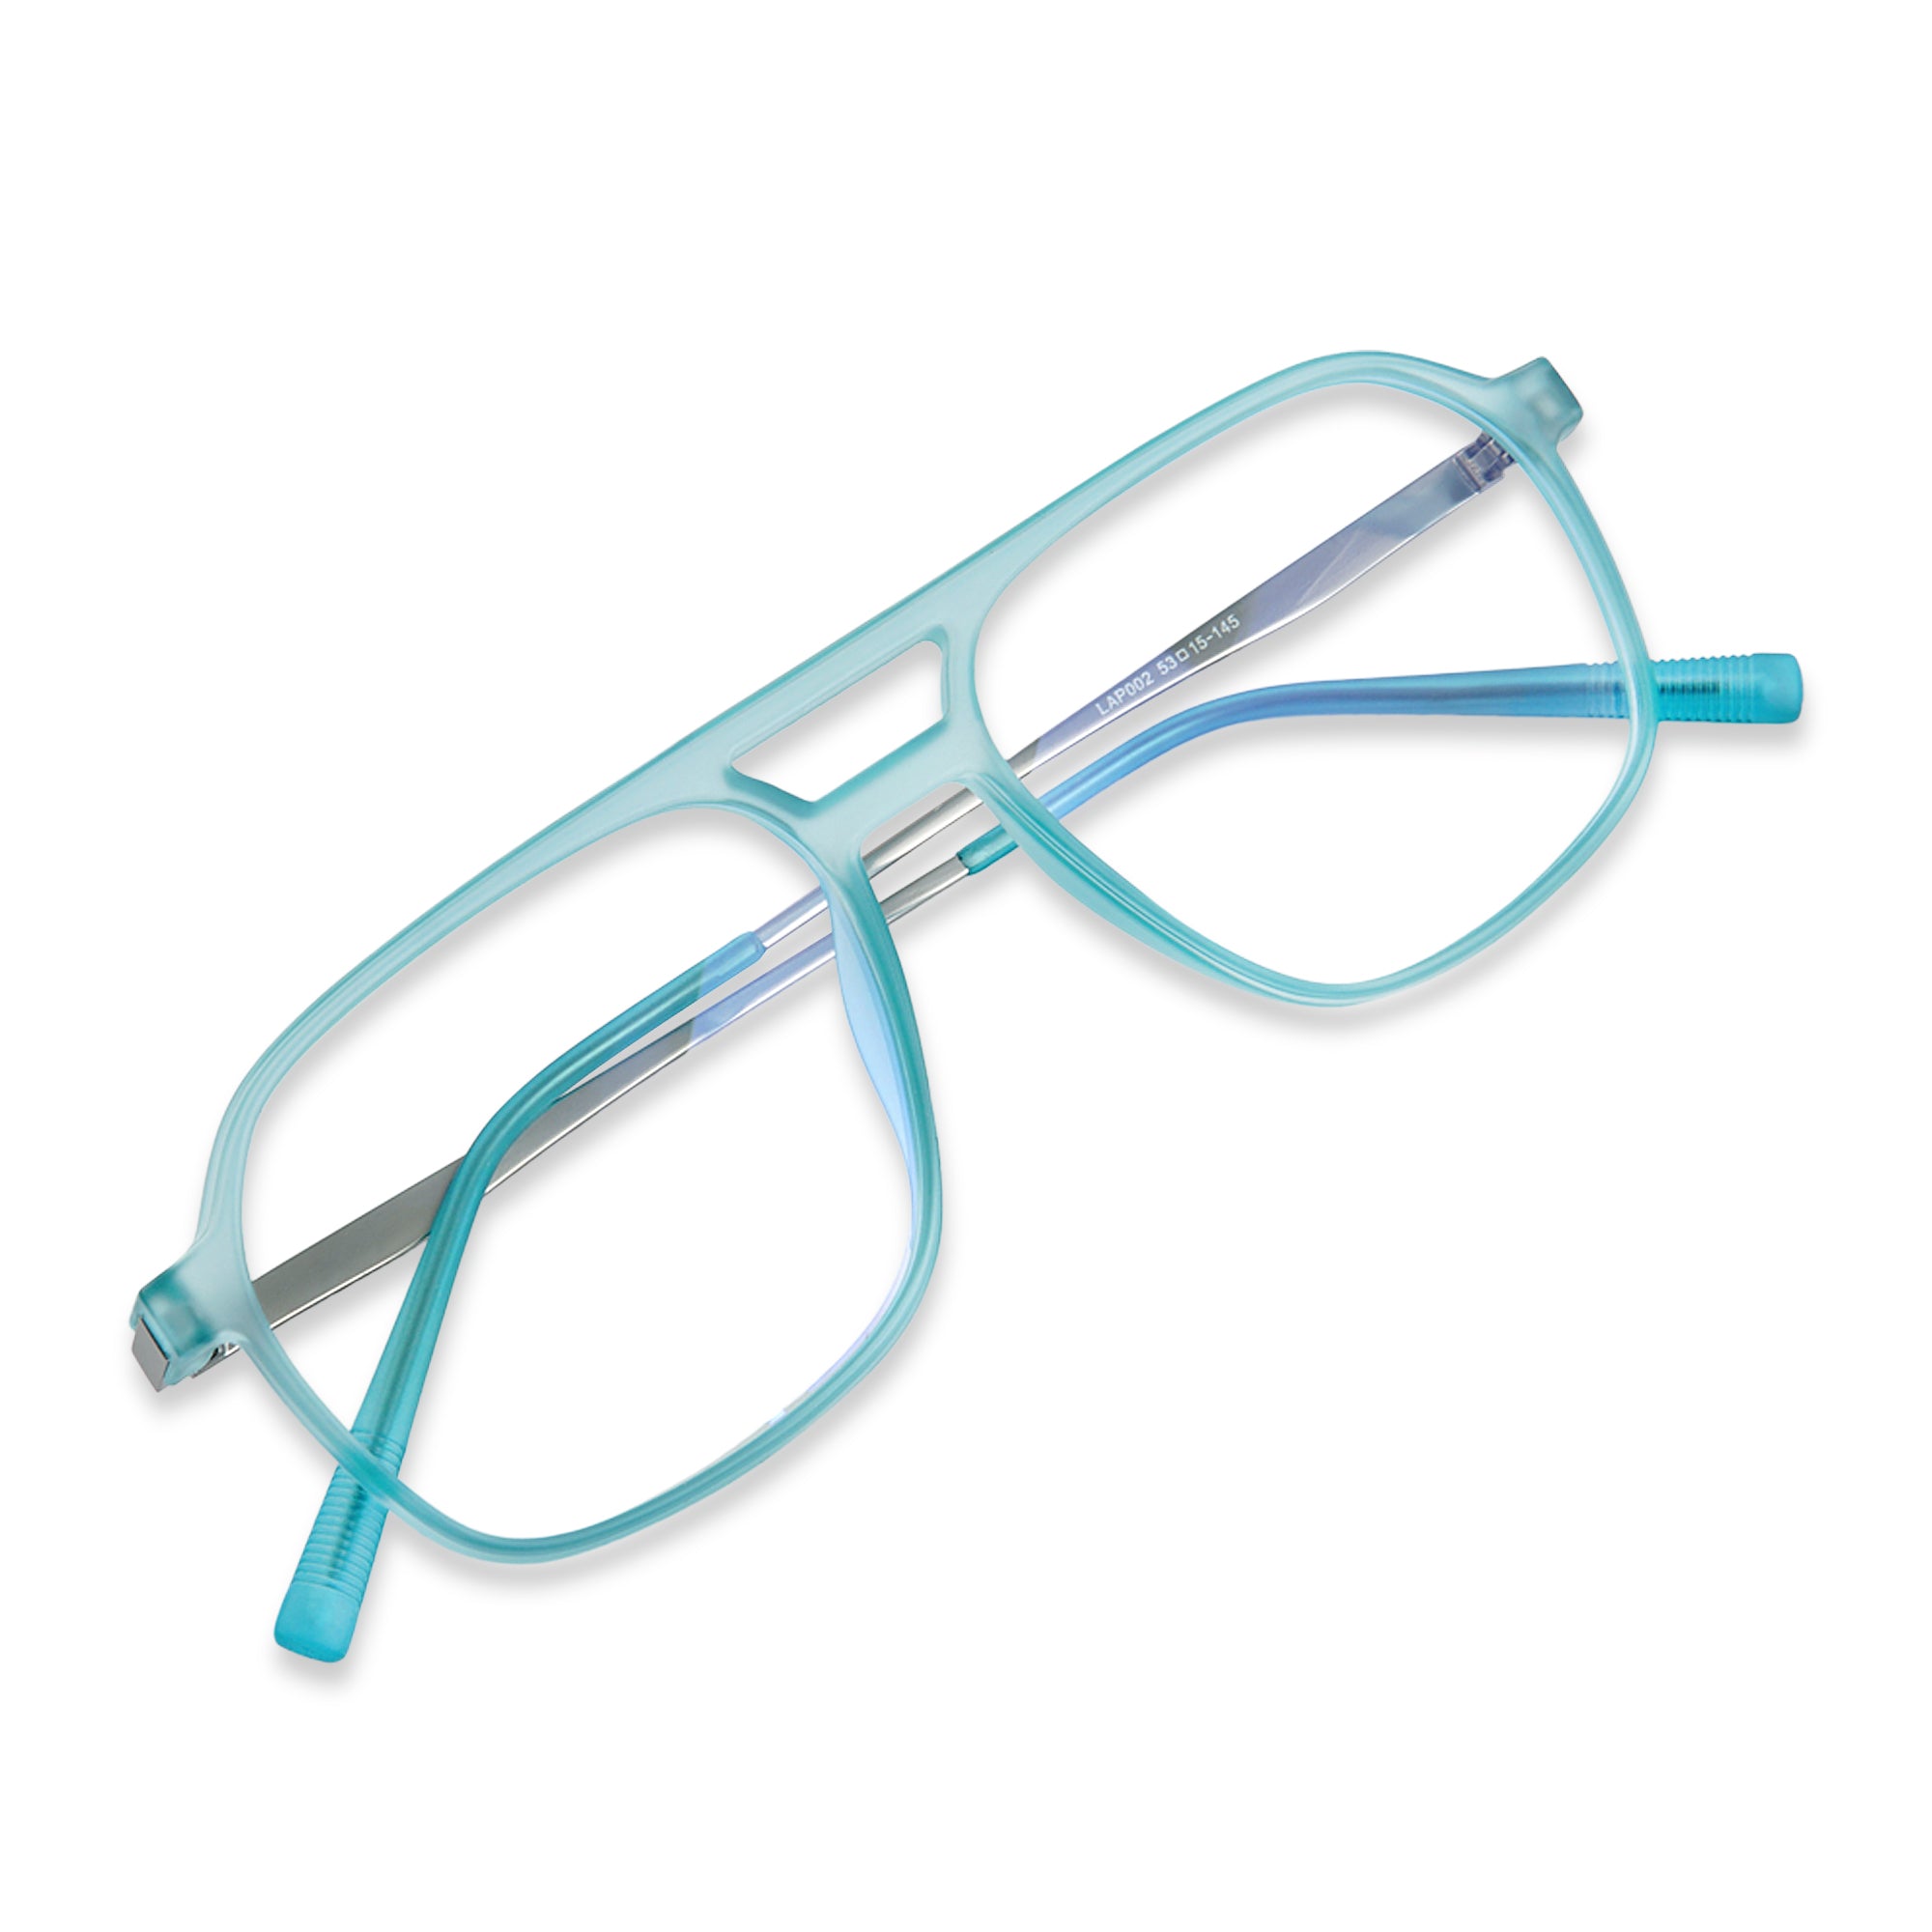 Matte Blue Square Eyeglasses - LP002